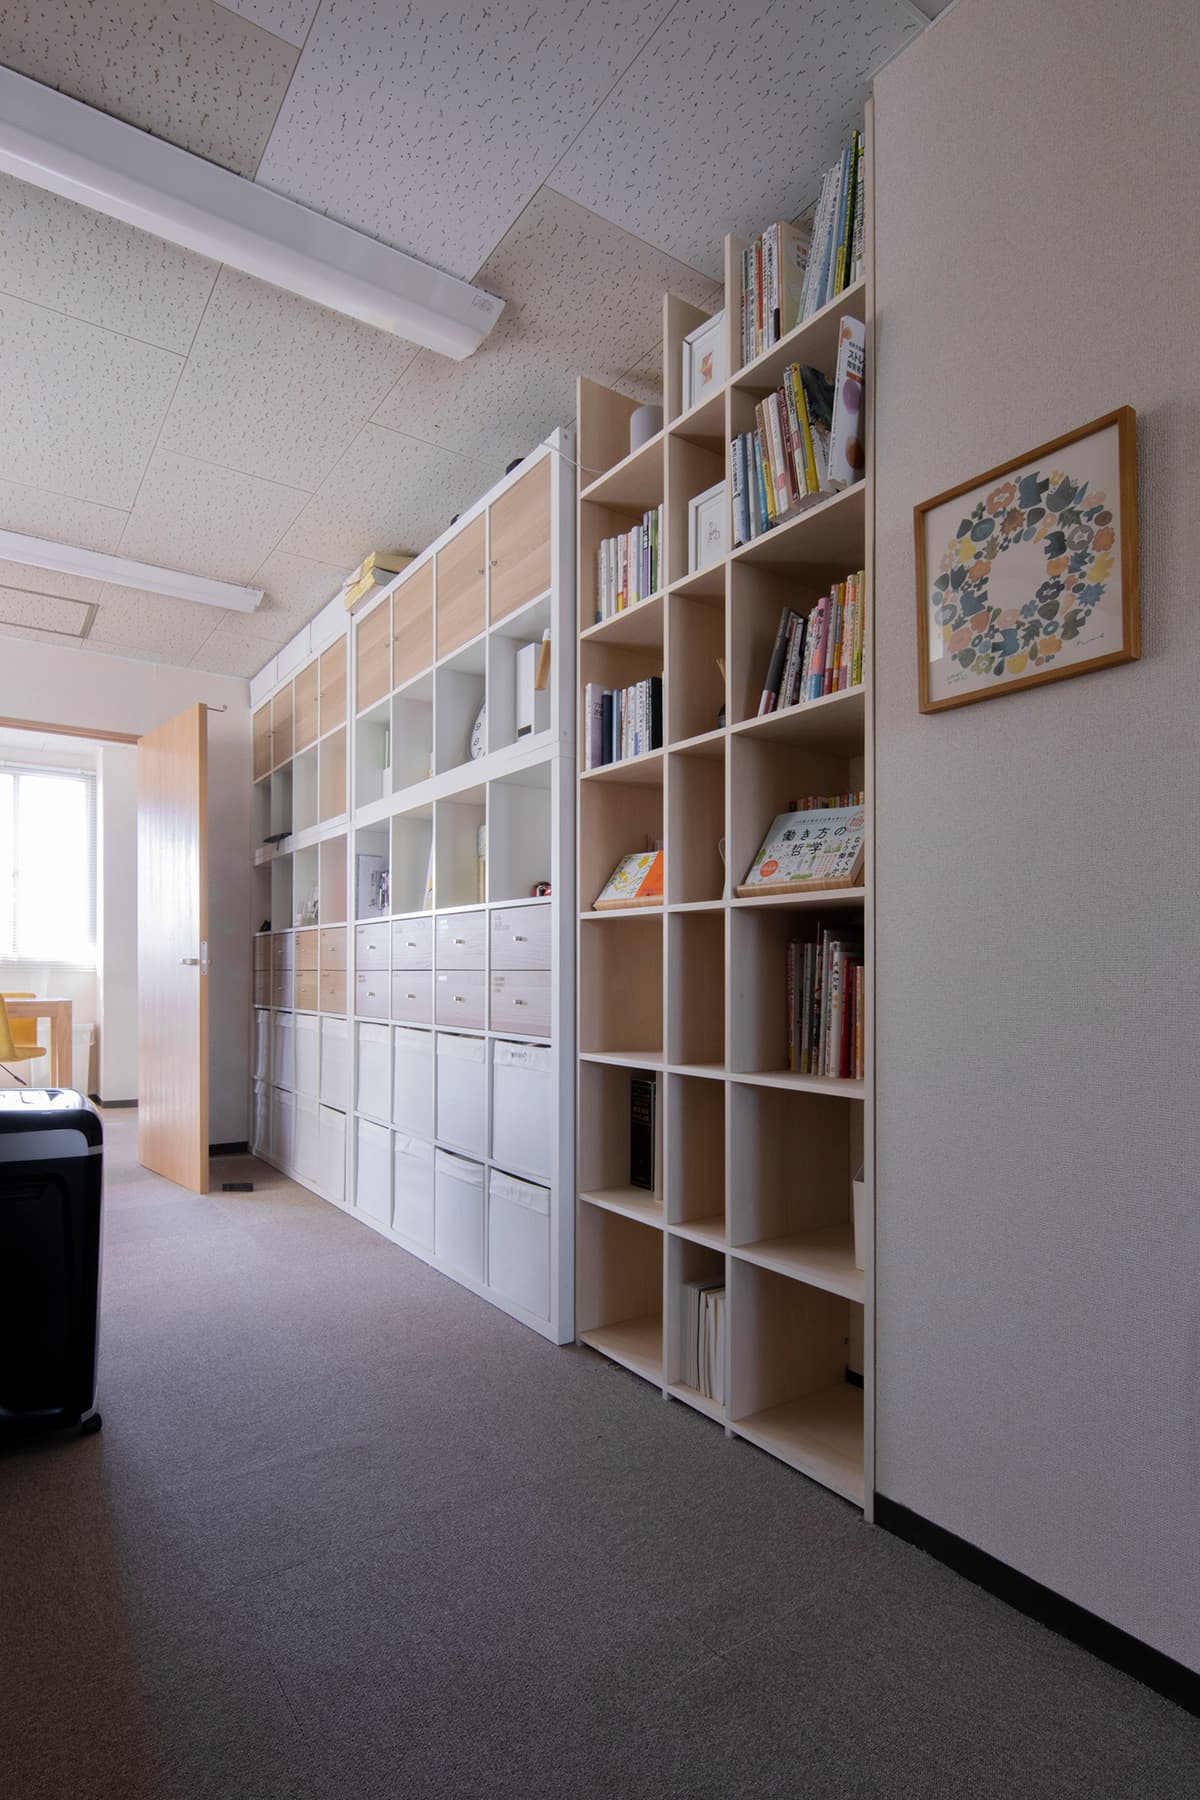 既存の家具の間に入って – Shelf 壁一面の本棚